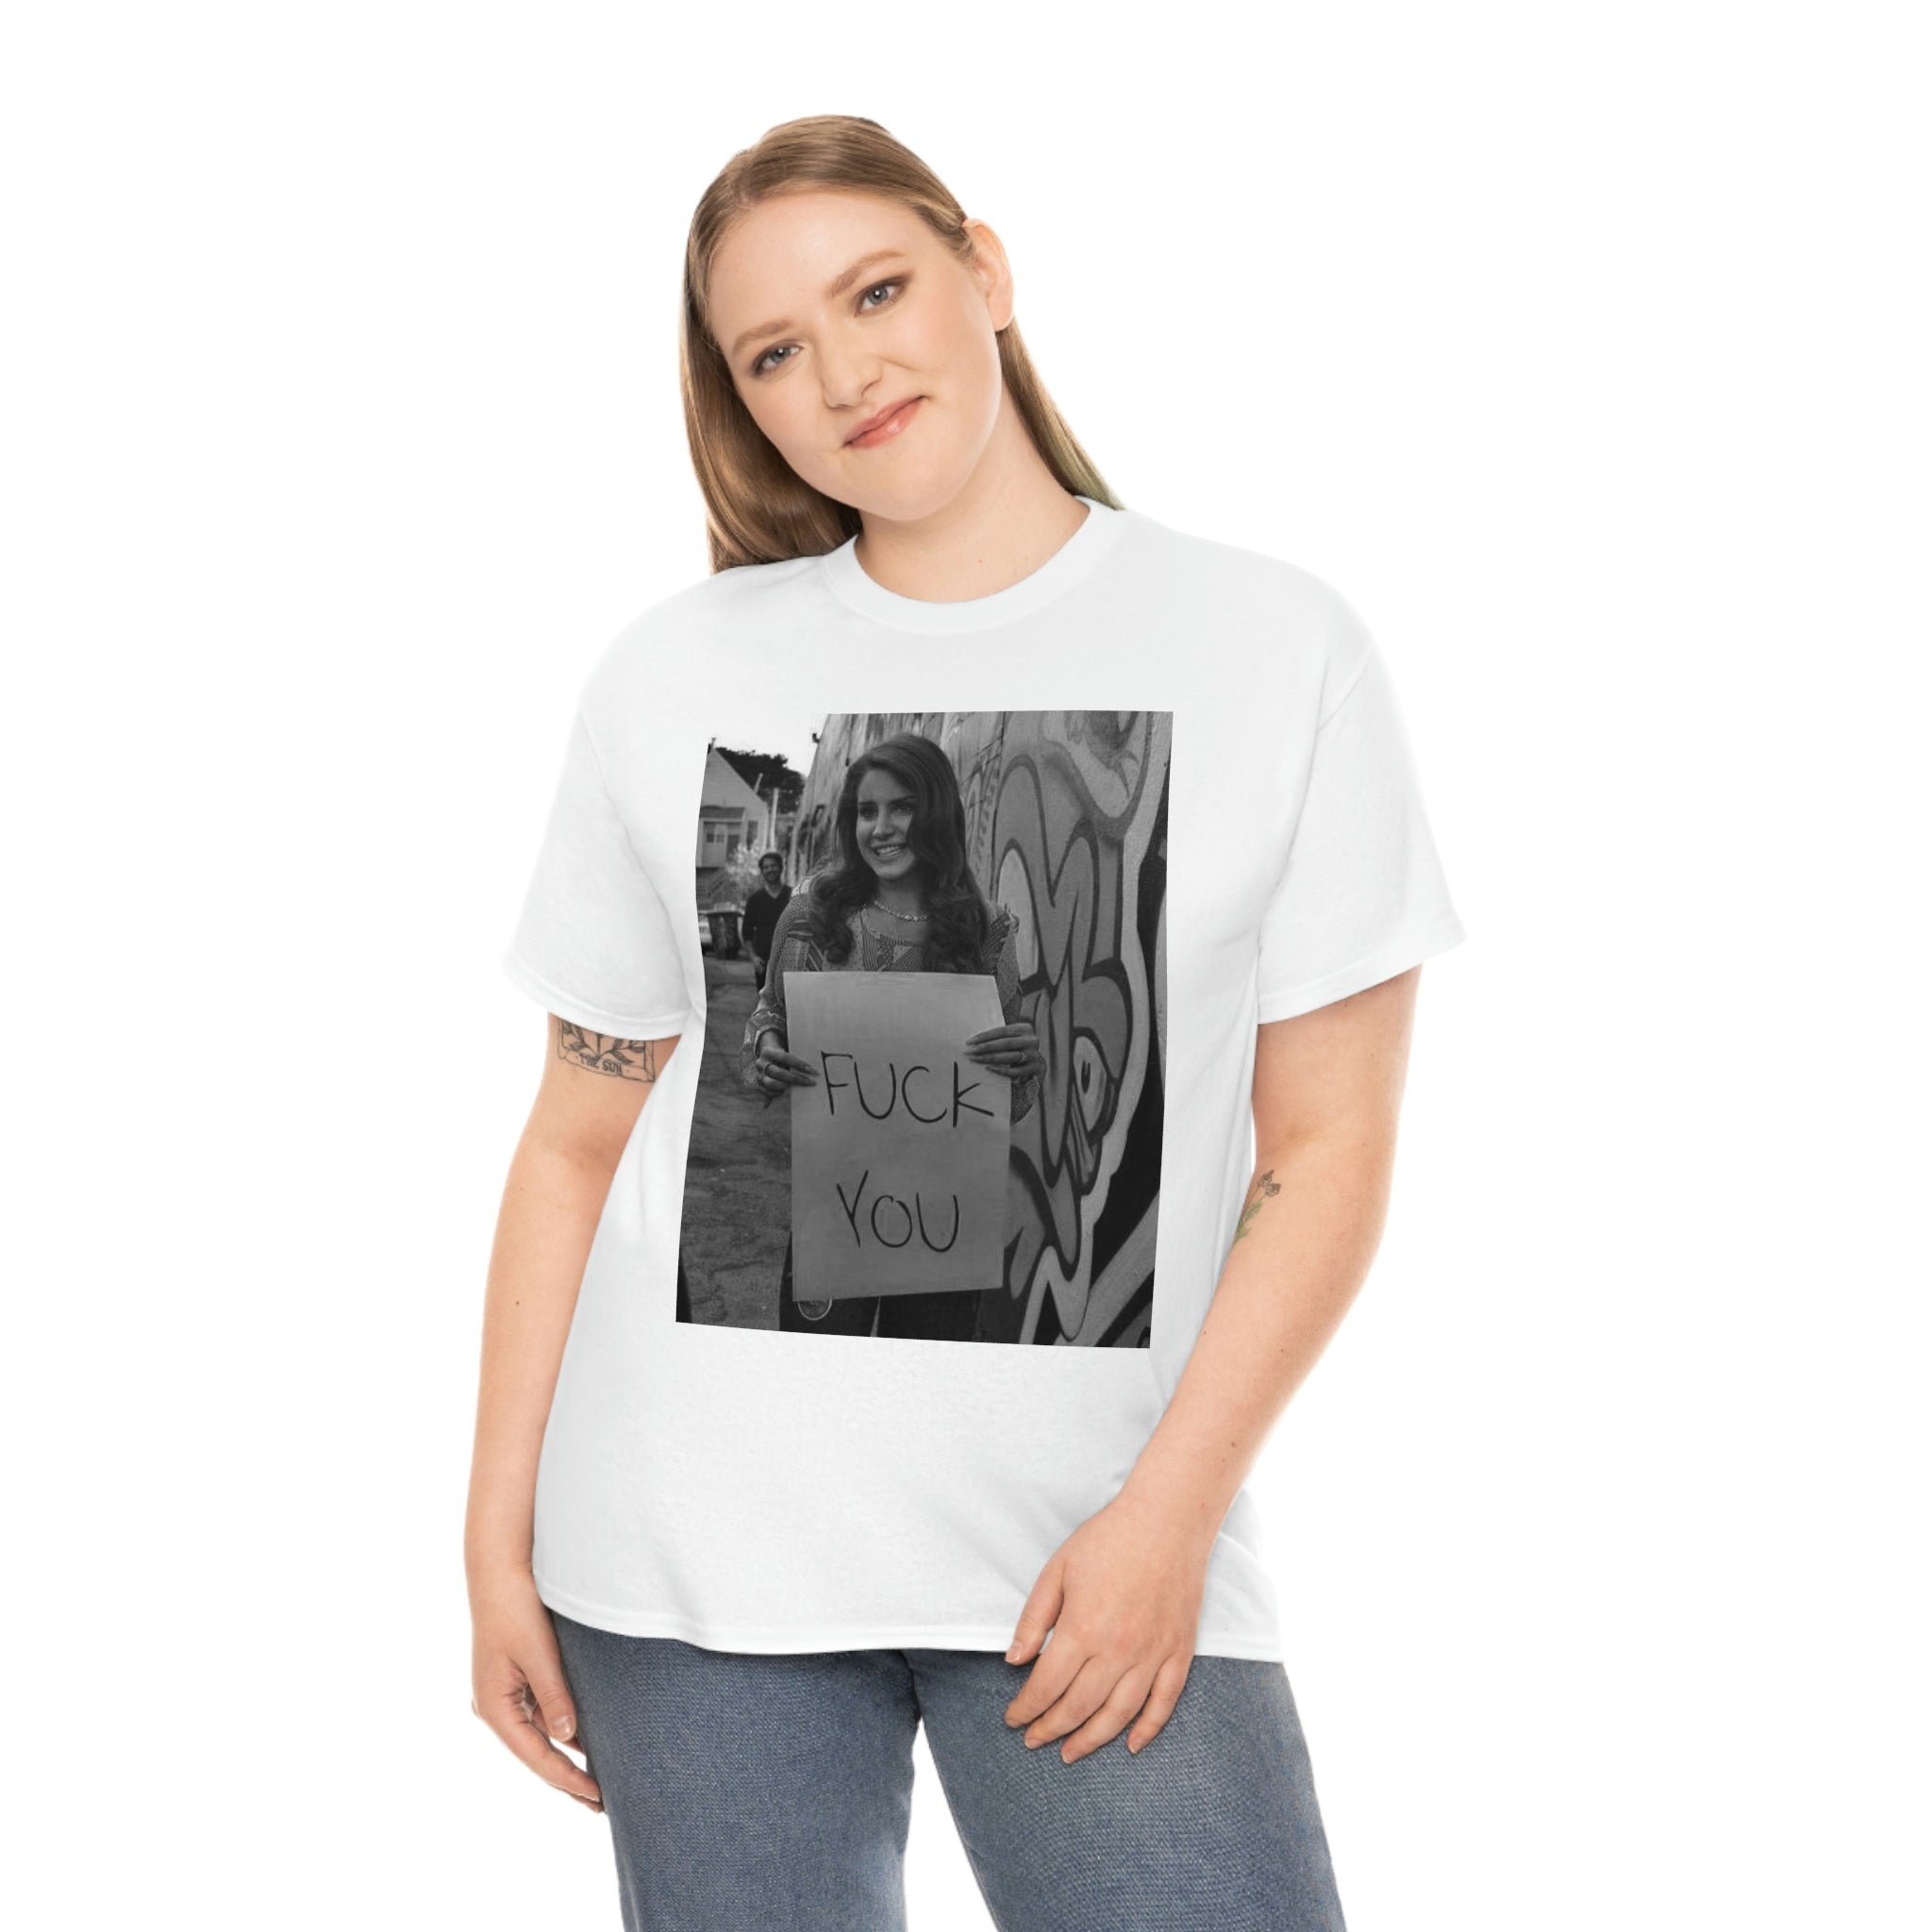 Lana Del Rey Funny T-shirt, Lana Del Rey 2023 T-shirt, Lana Del Rey merch